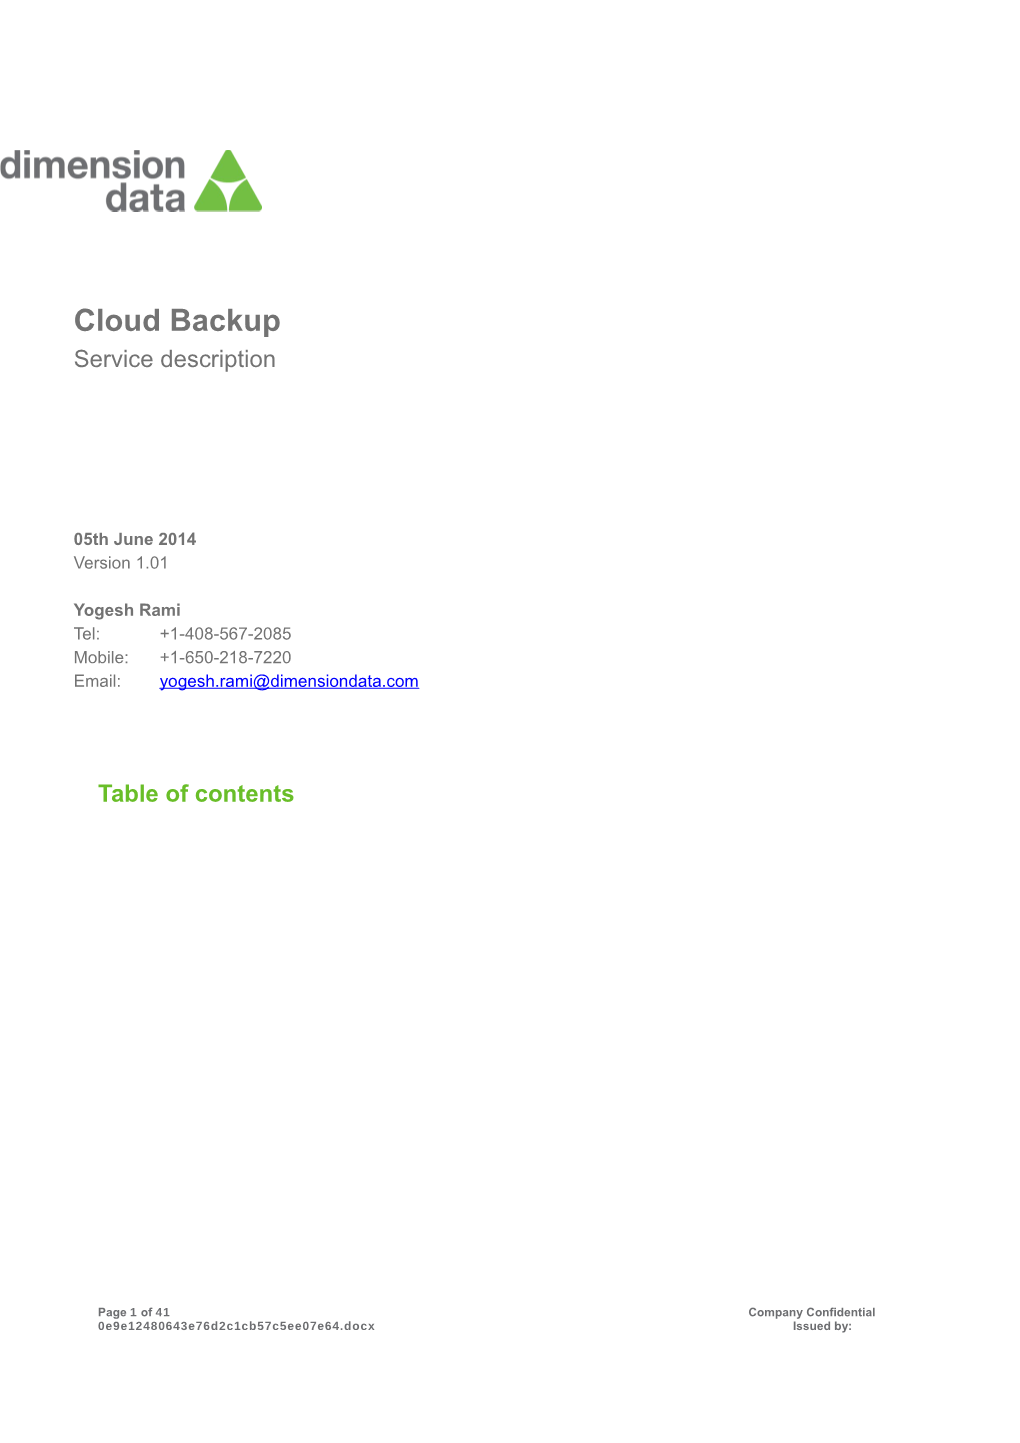 Cloud Backup Service Description